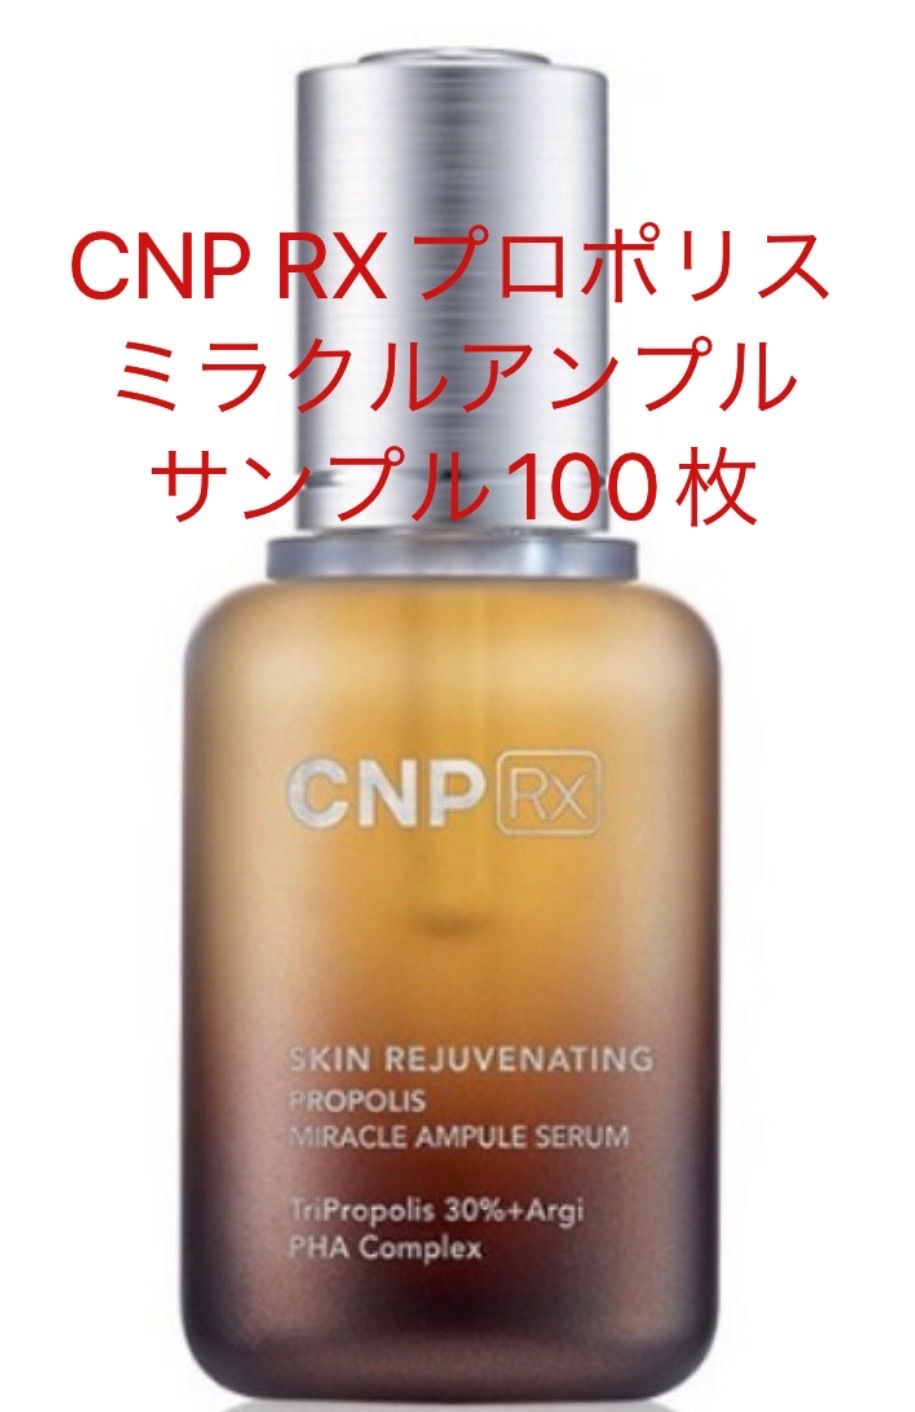 ブランド品 CNP Rx スキン リジュー ヴィネイティング ミラクル エッセンス ×100